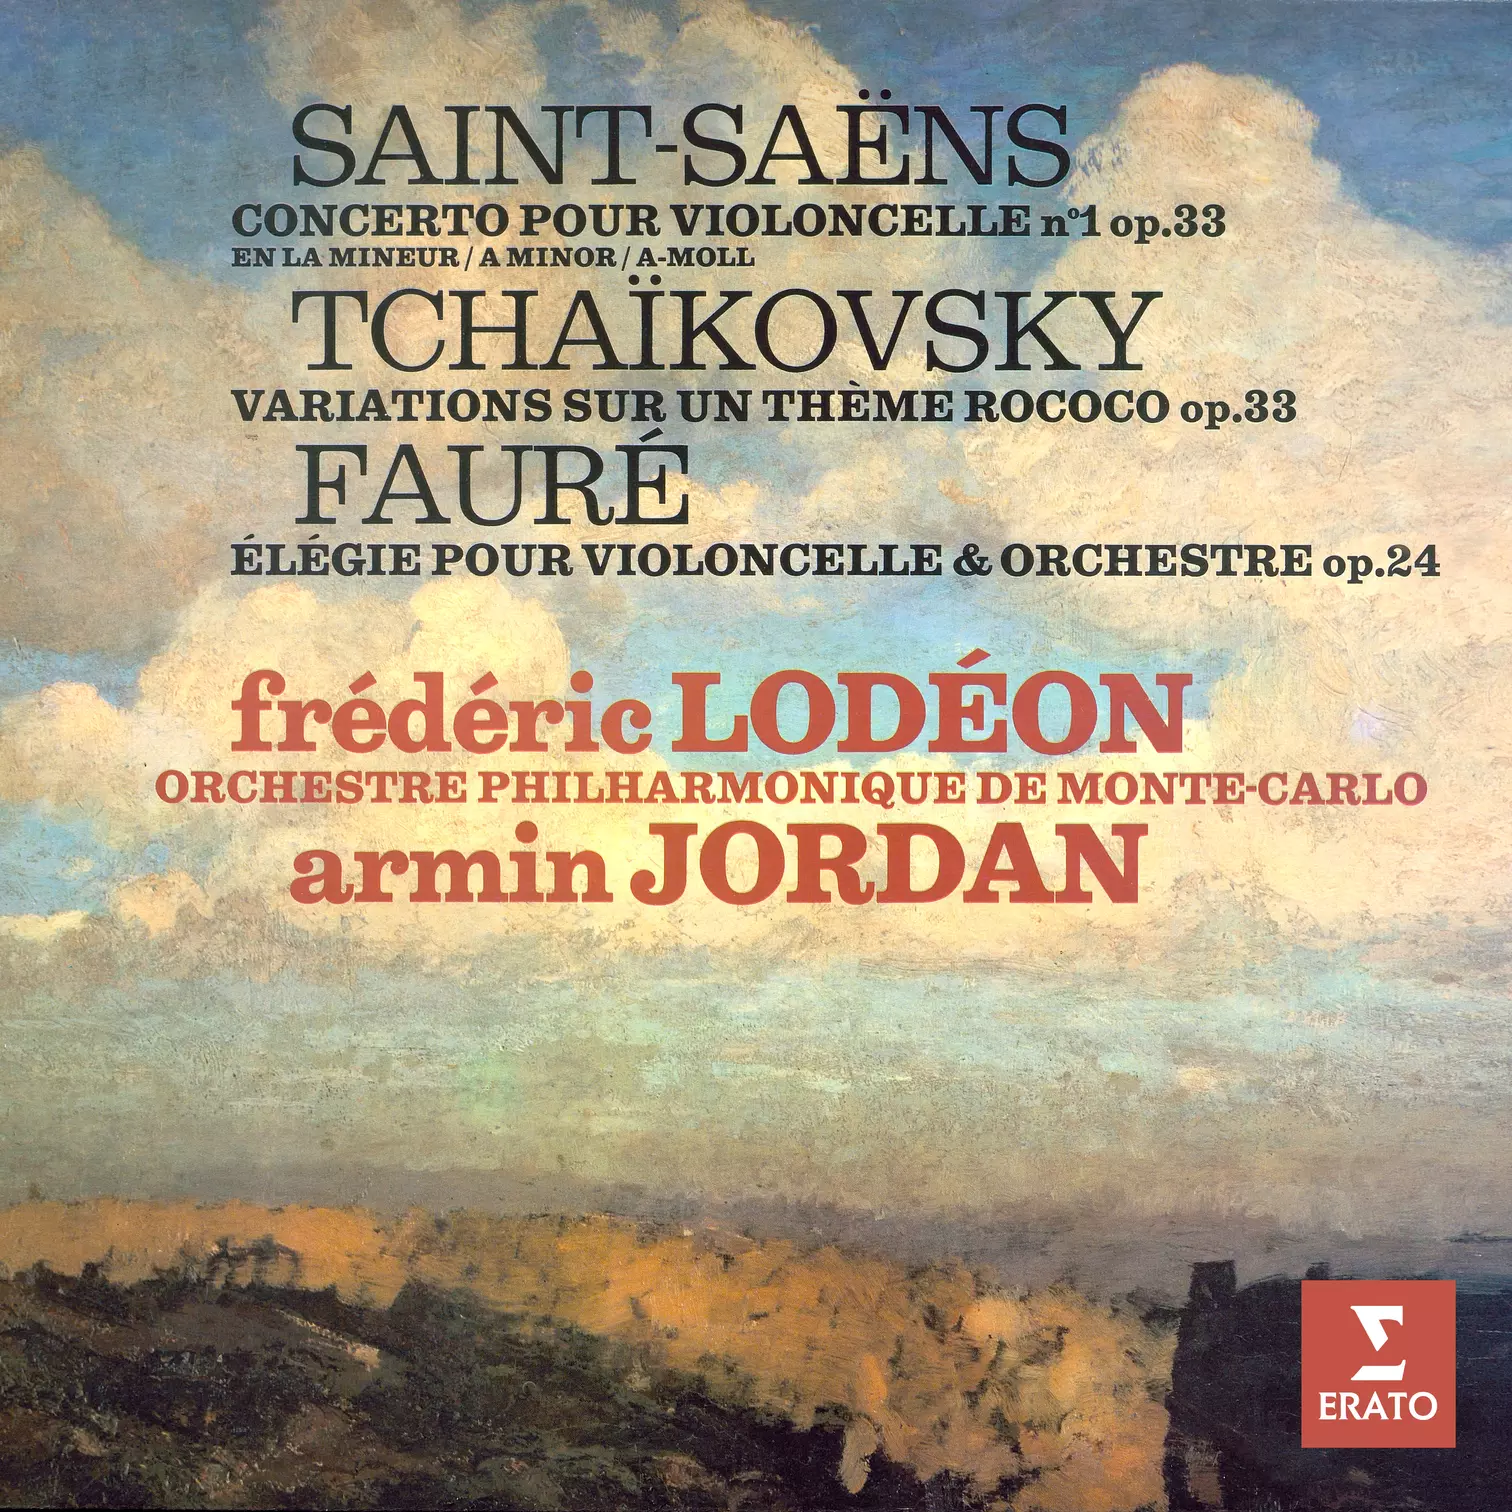 Saint-Saëns: Concerto pour violoncelle No. 1 - Tchaikovsky: Variations rococo - Fauré: Élégie